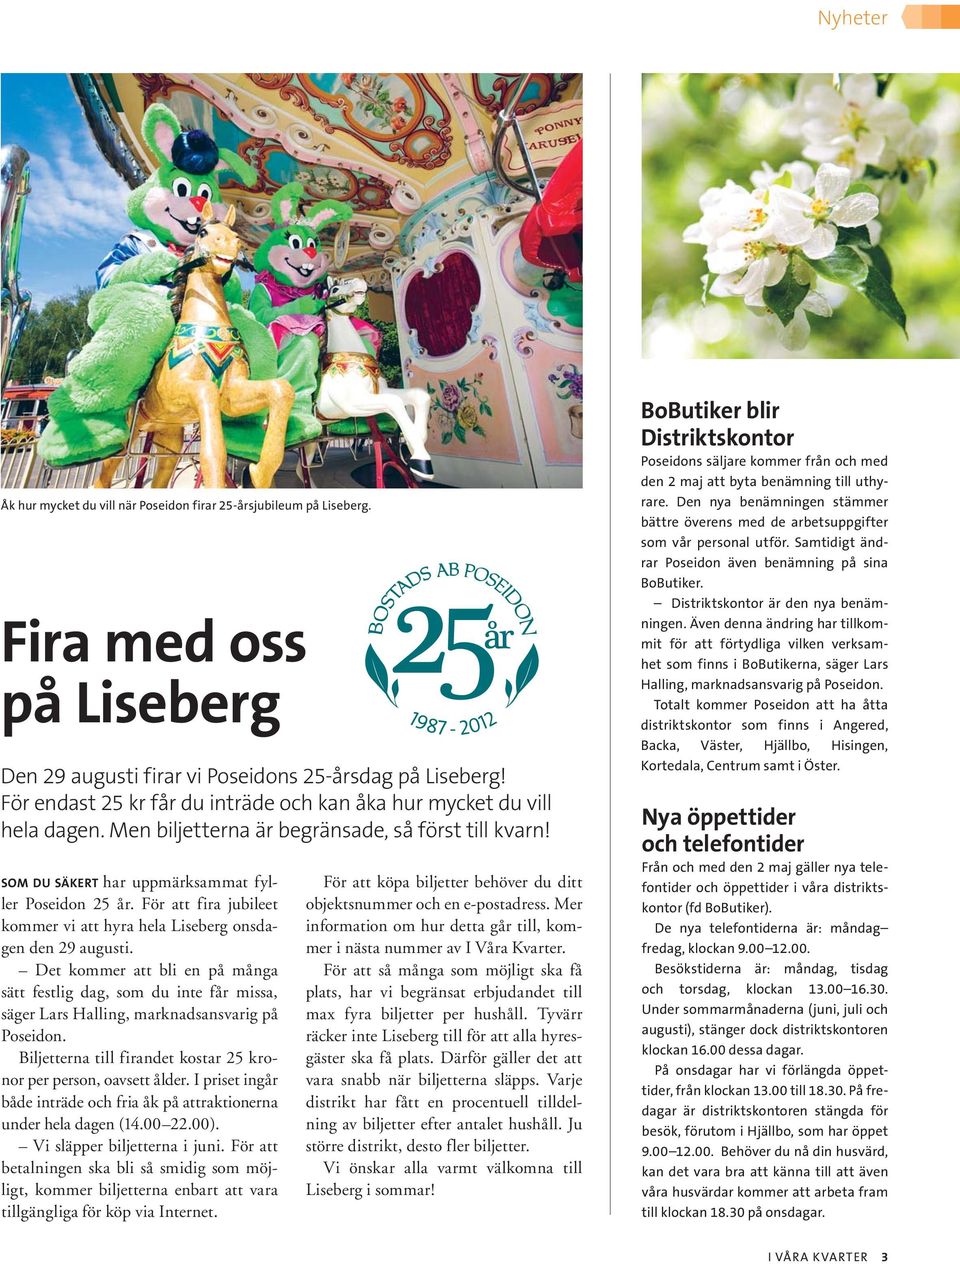 För att fira jubileet kommer vi att hyra hela Liseberg onsdagen den 29 augusti.